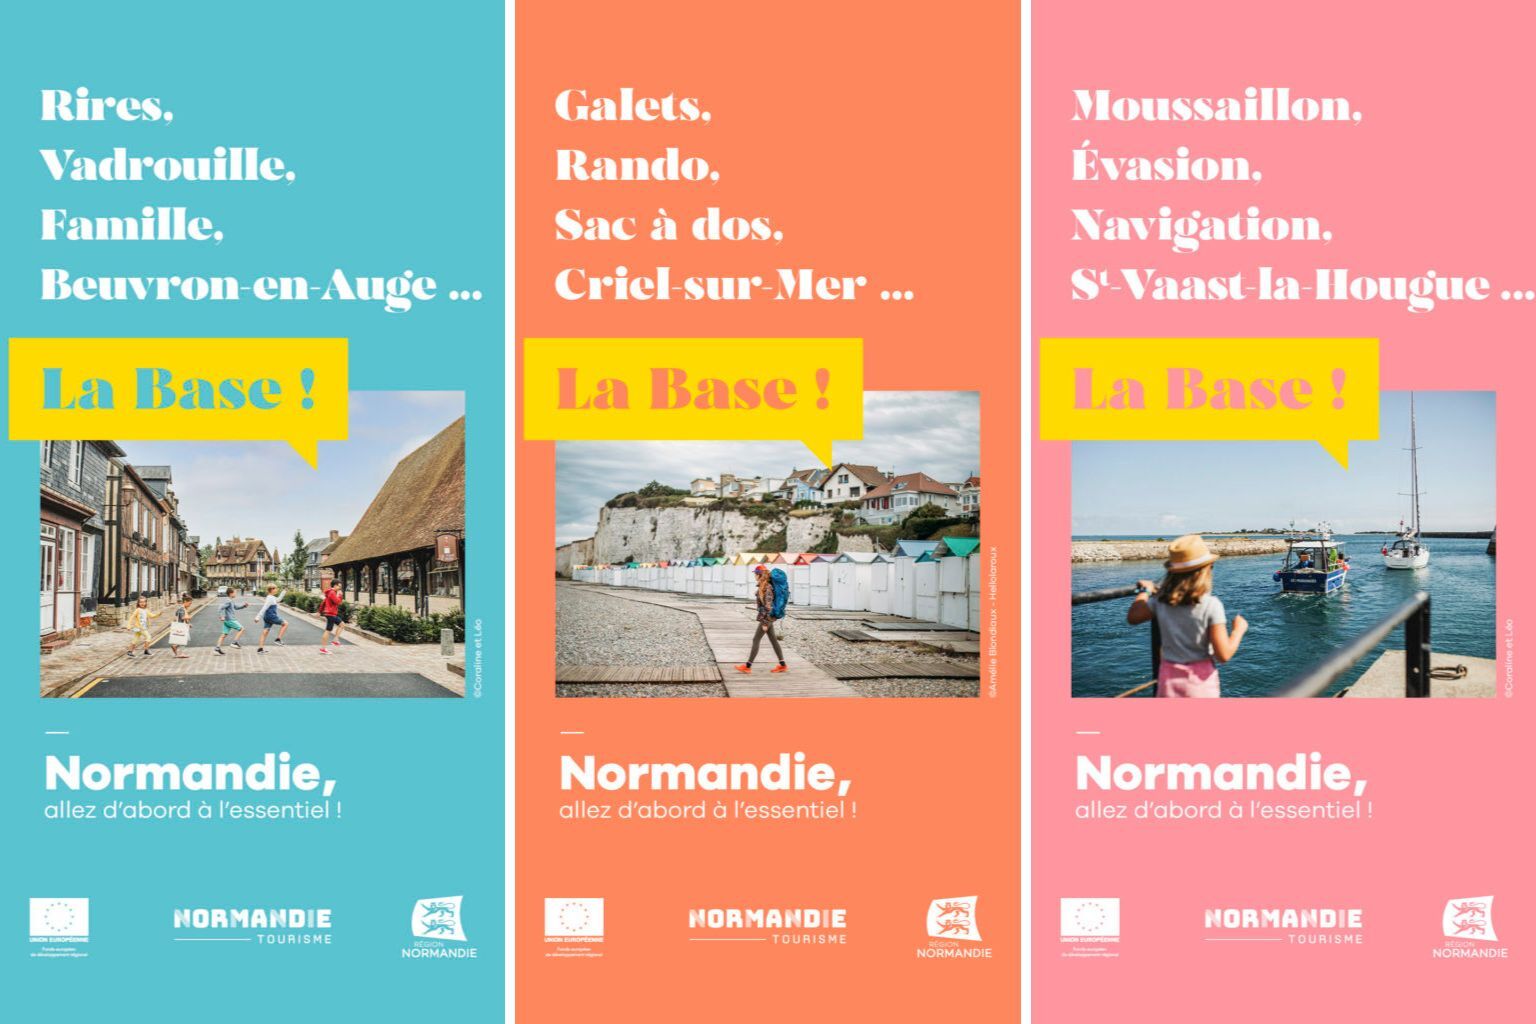 Campagne touristique de l'été 2022 Normandie "la base"